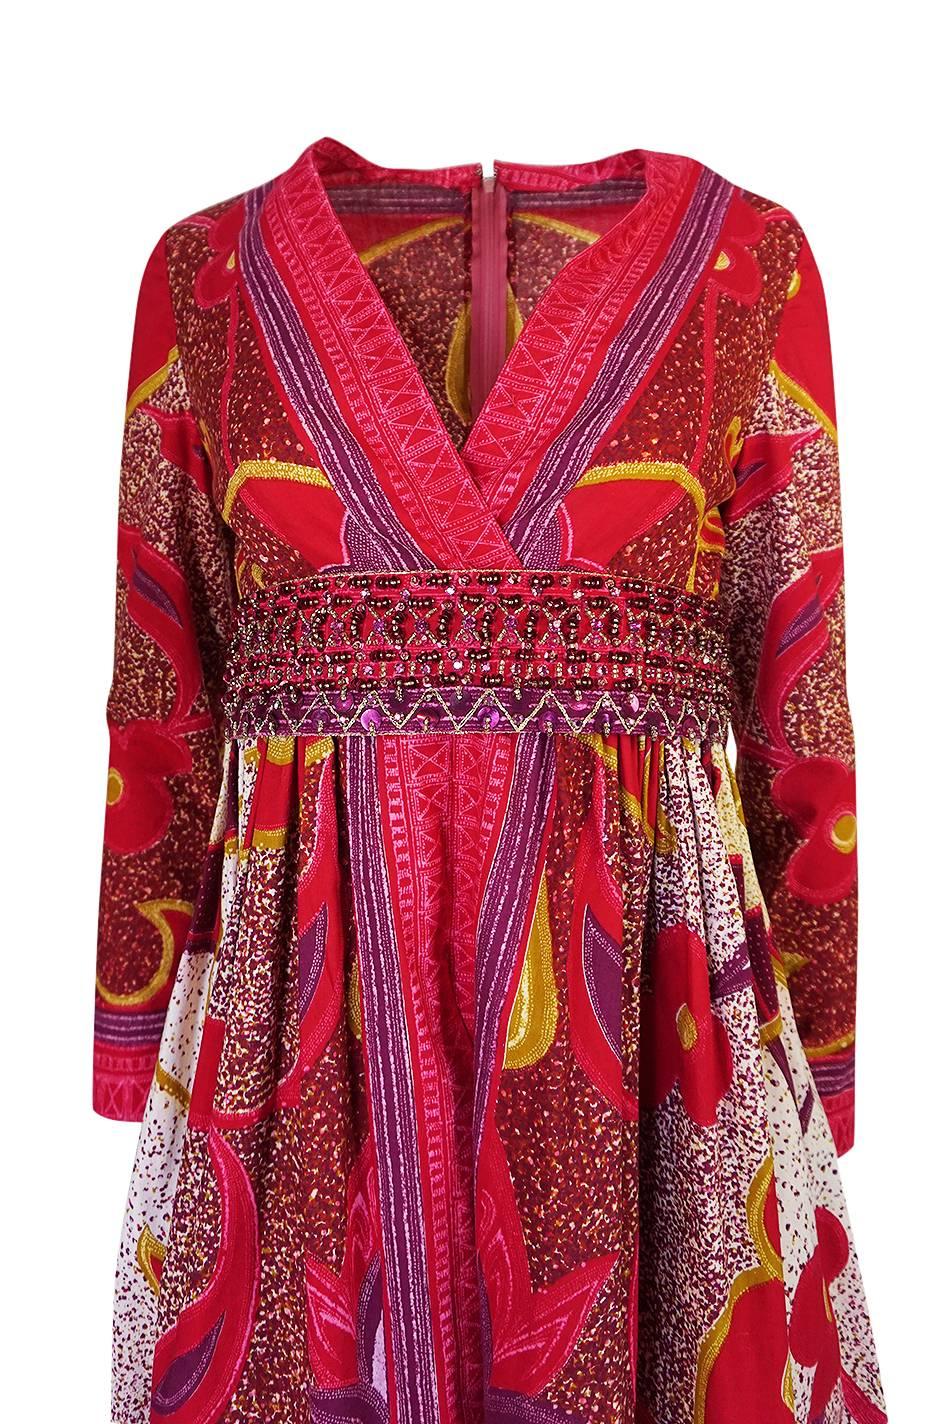 Women's 1960s Malcolm Starr Batik Print Dress w Heavily Beaded Belt